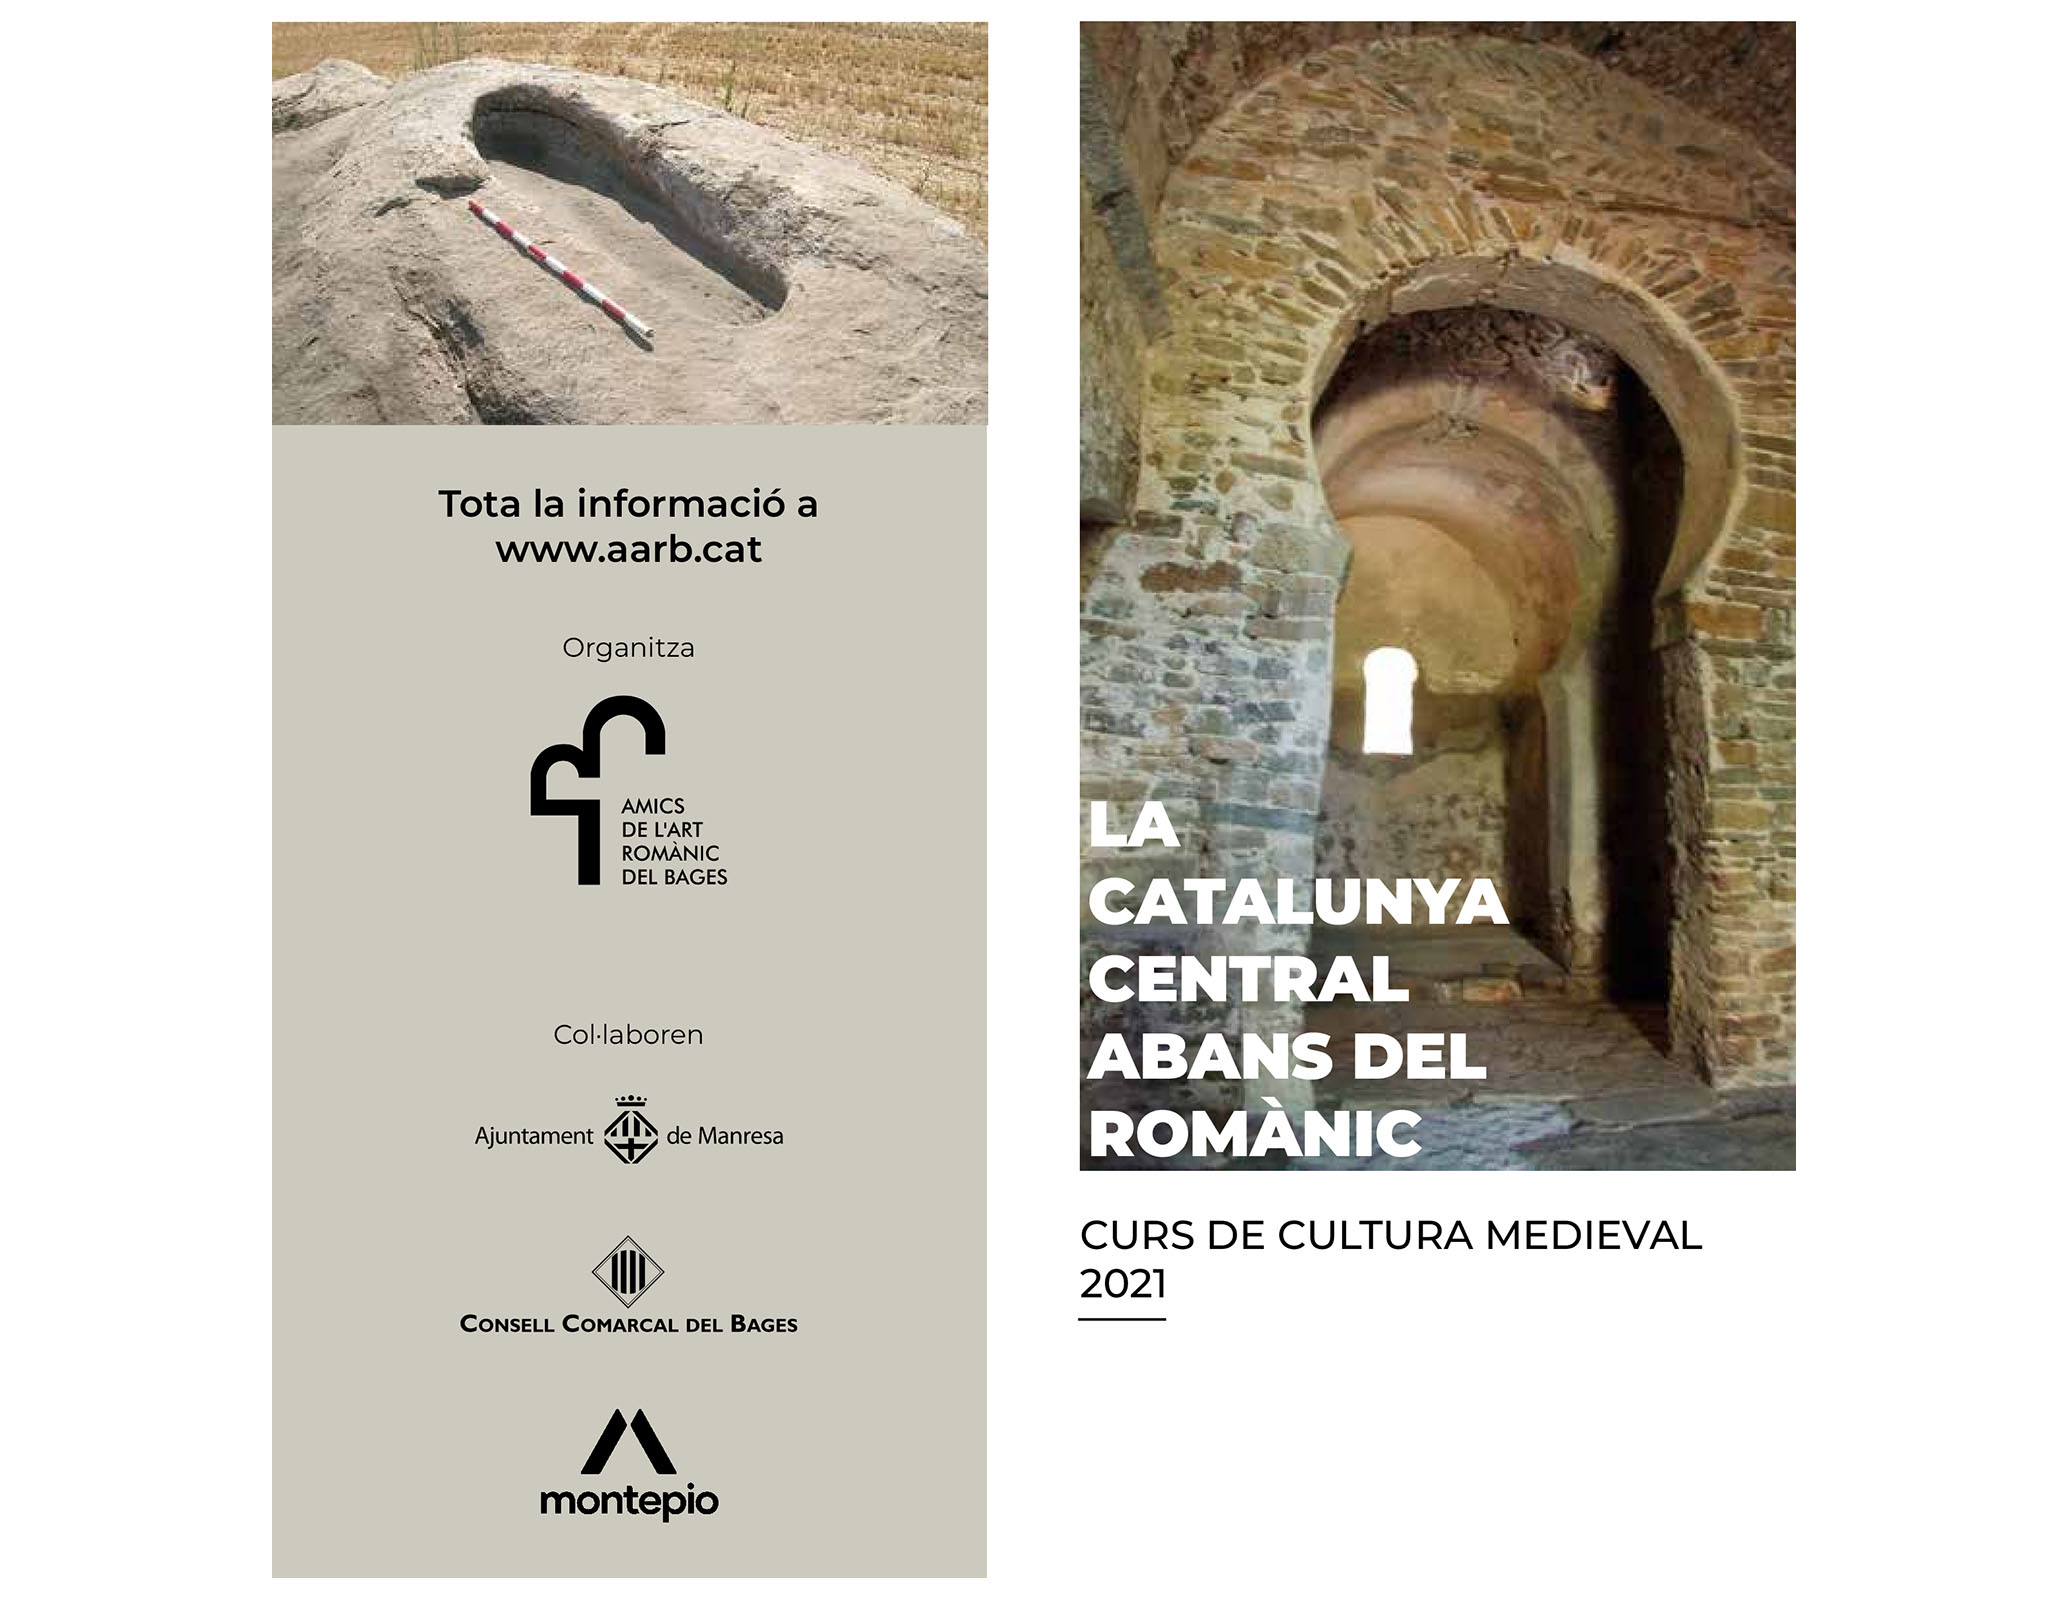 Curs de Cultura Medieval 2021 "La Catalunya Central abans del Romànic"